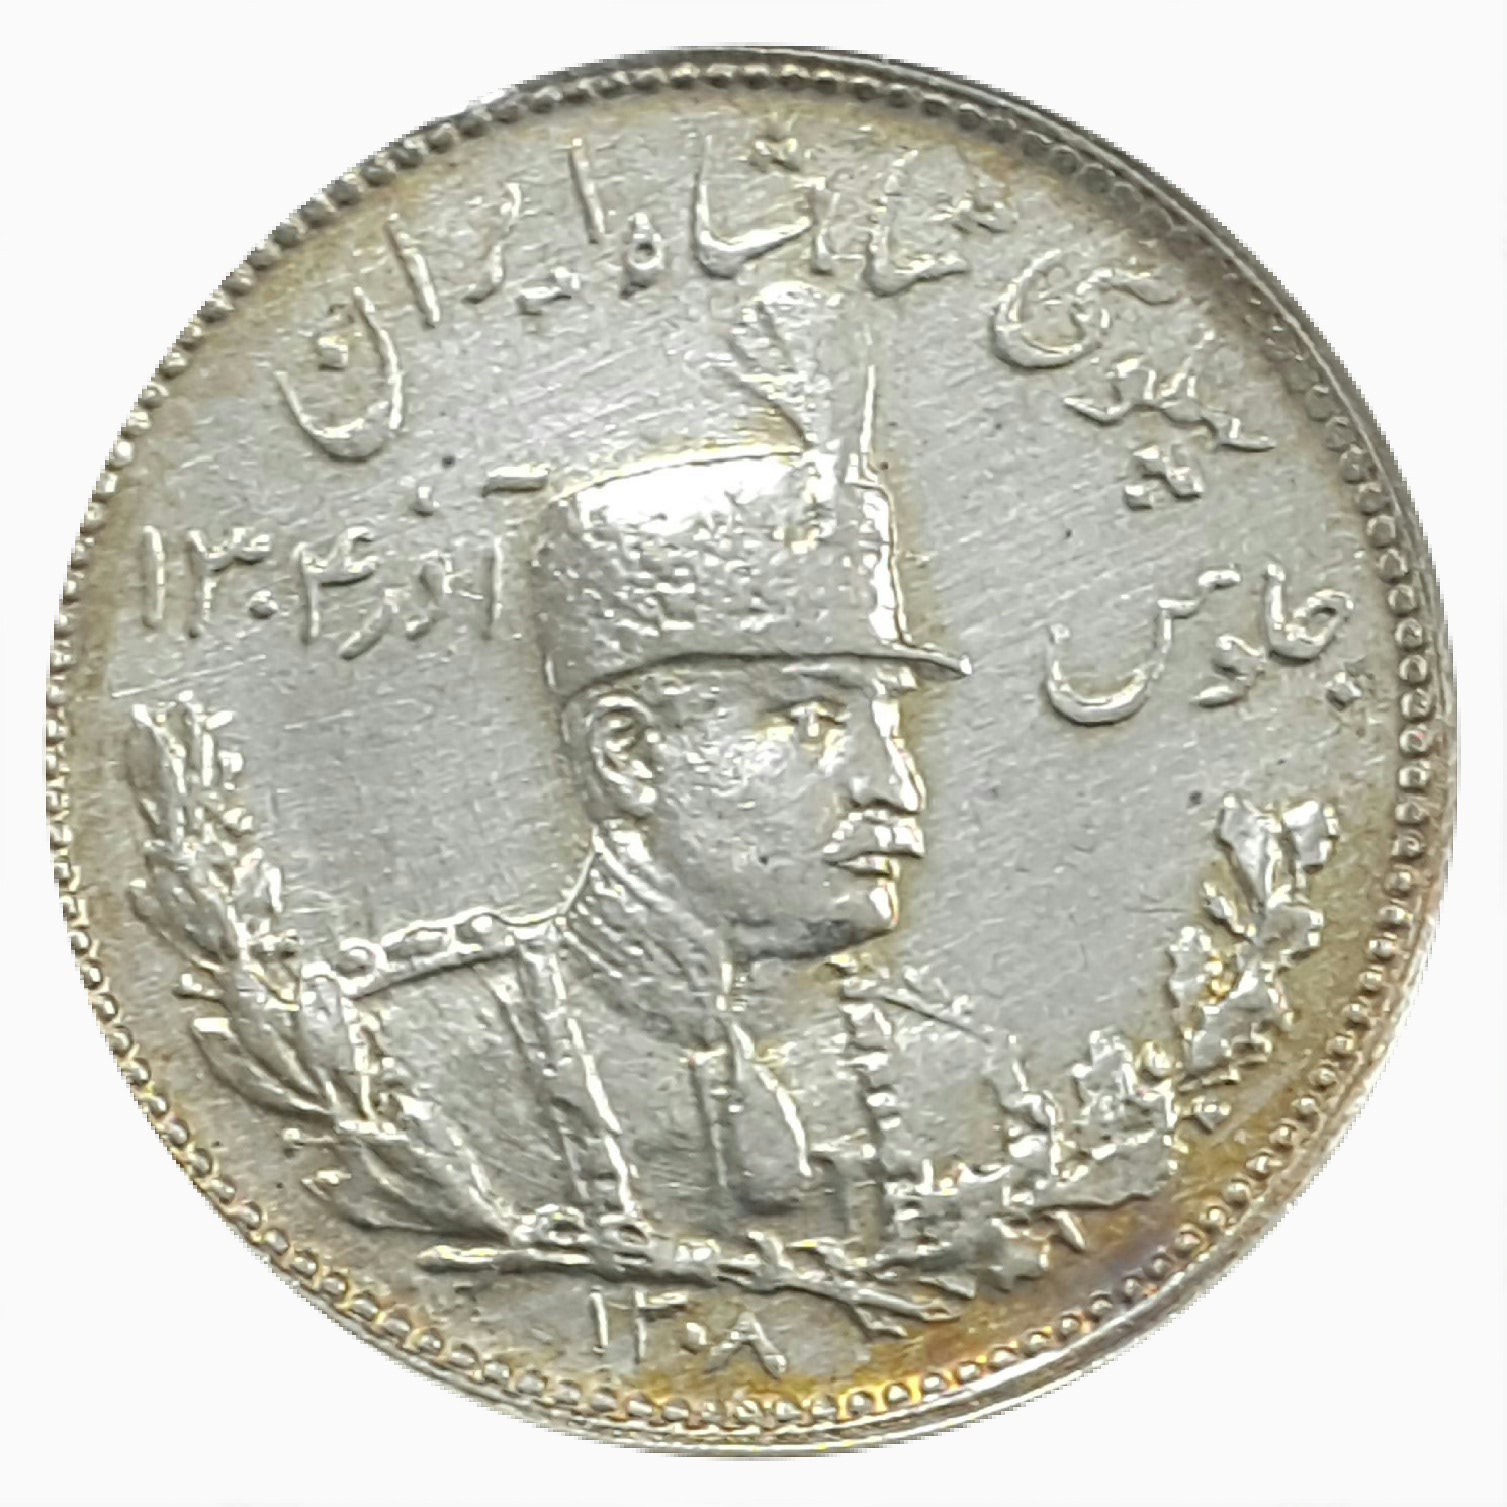 سکه ایرانی